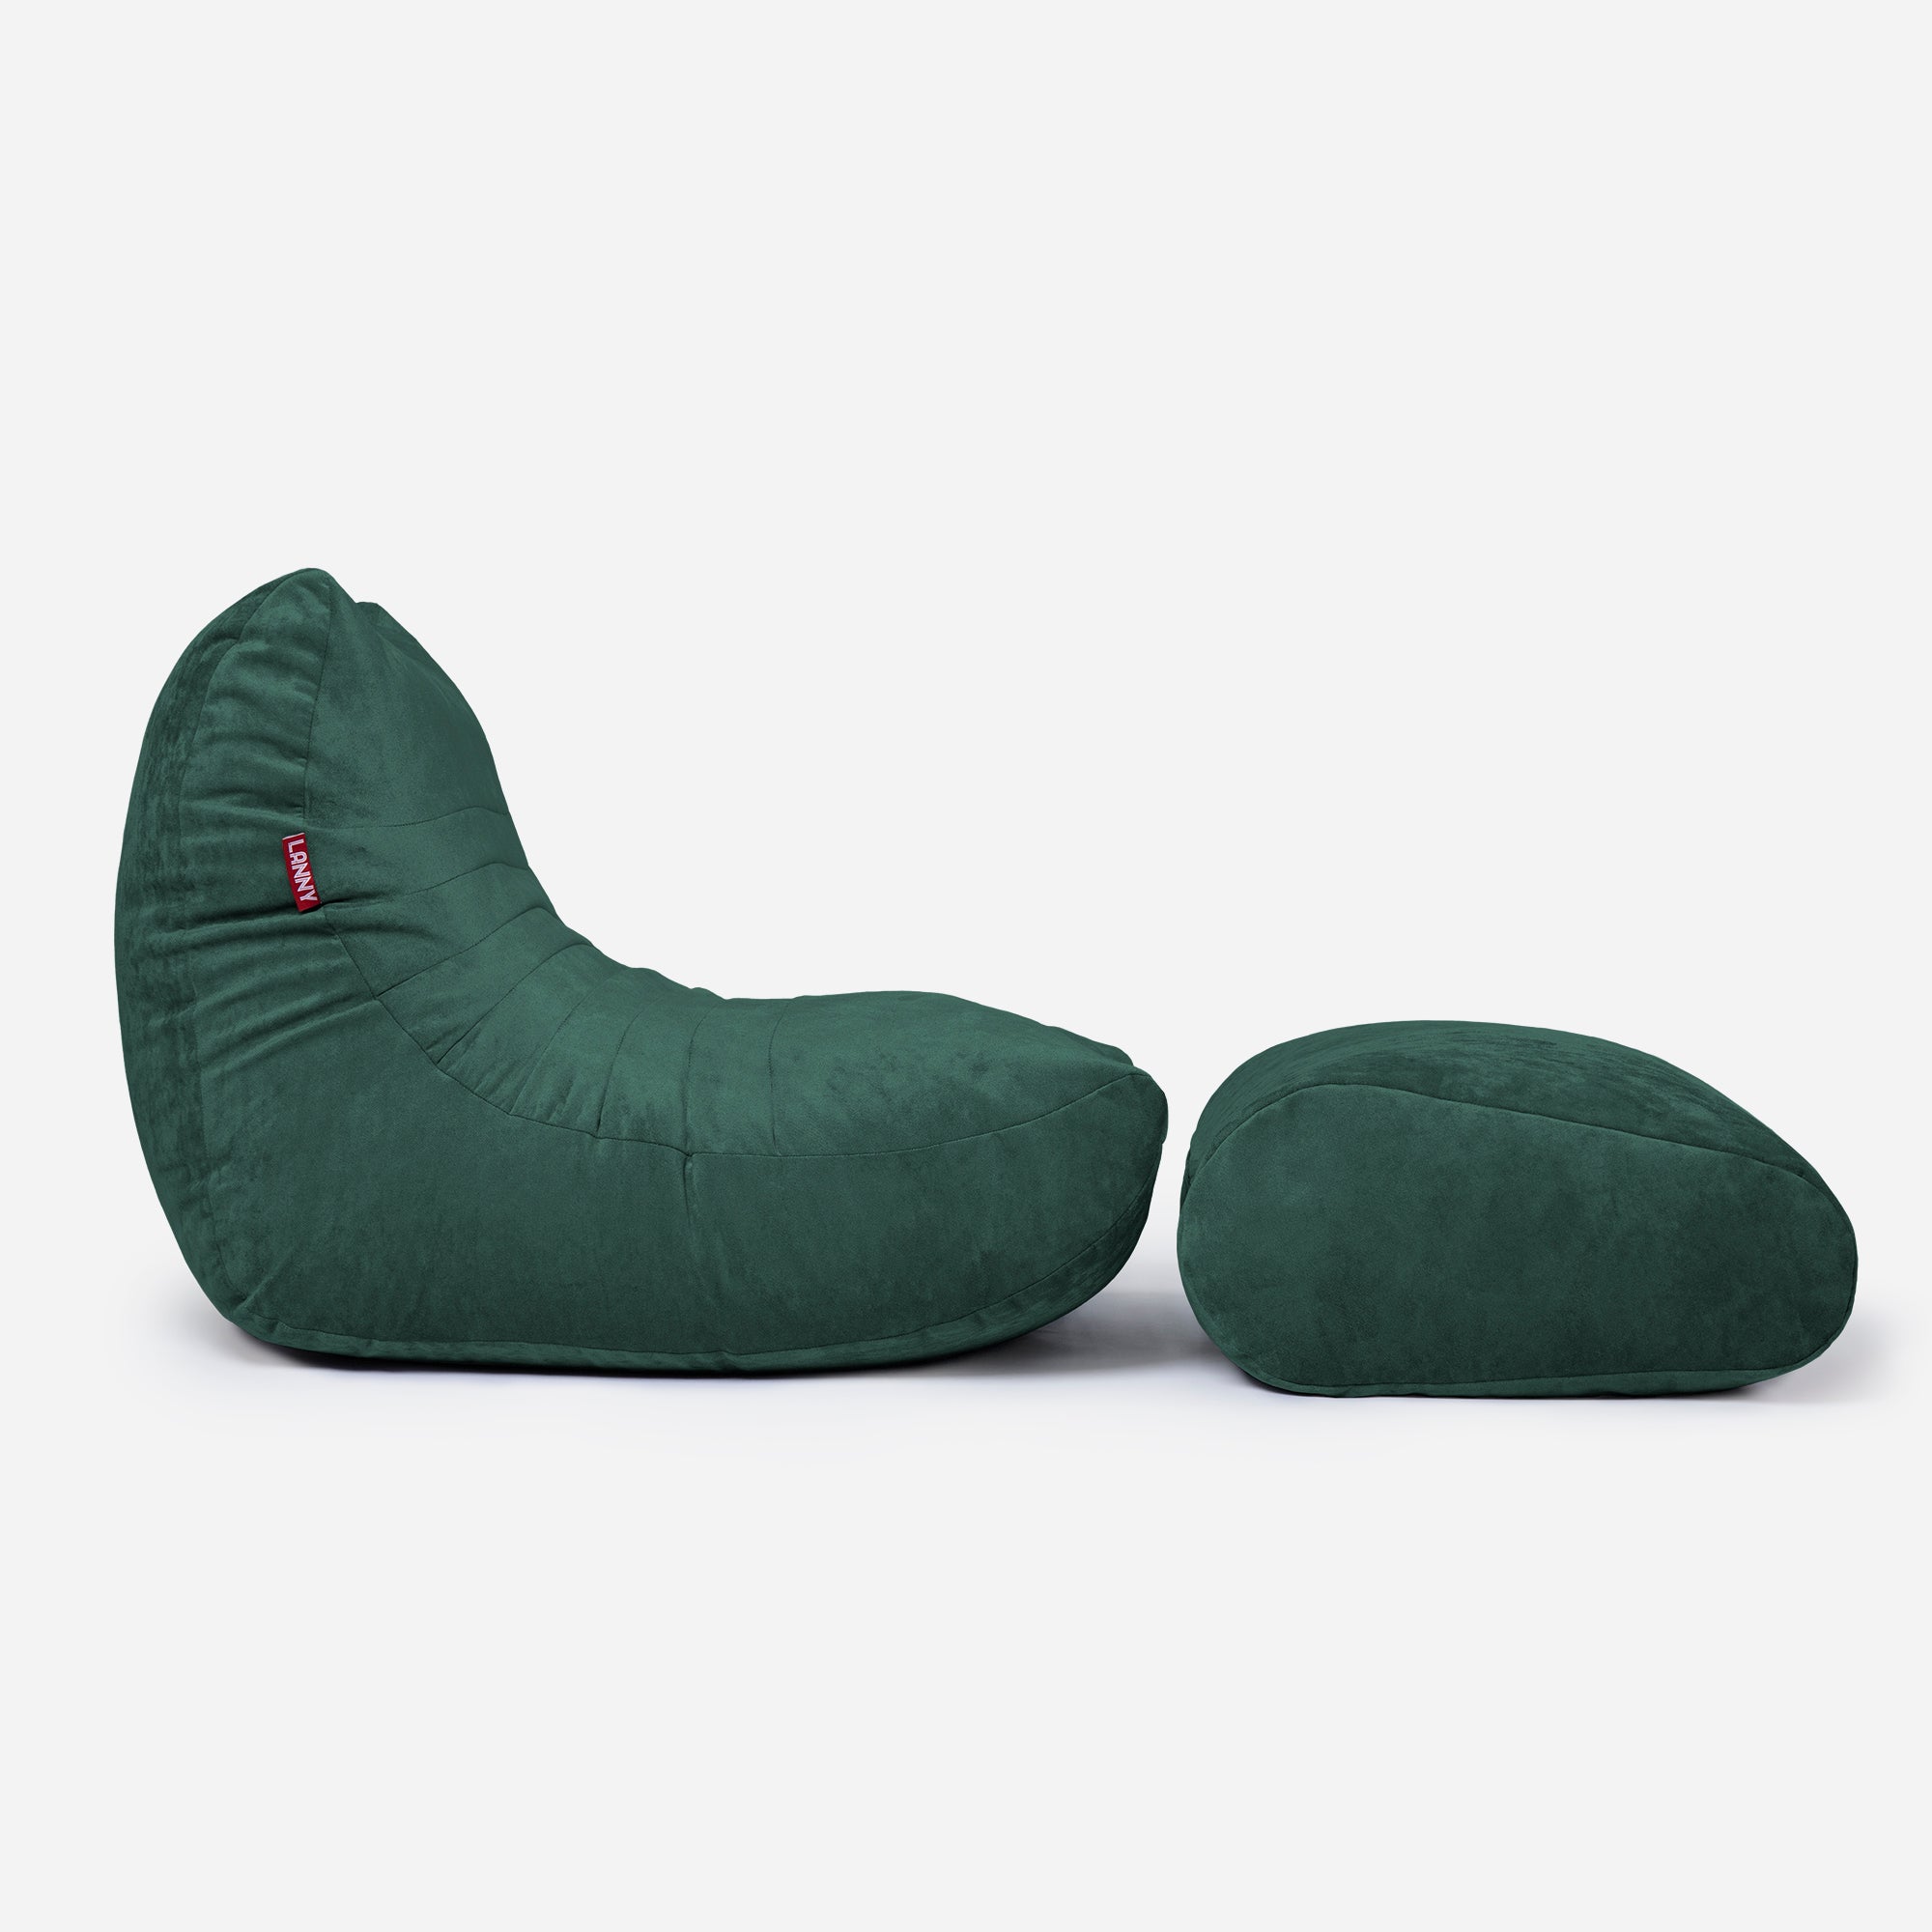 Curvy Aldo Green Bean Bag Chair